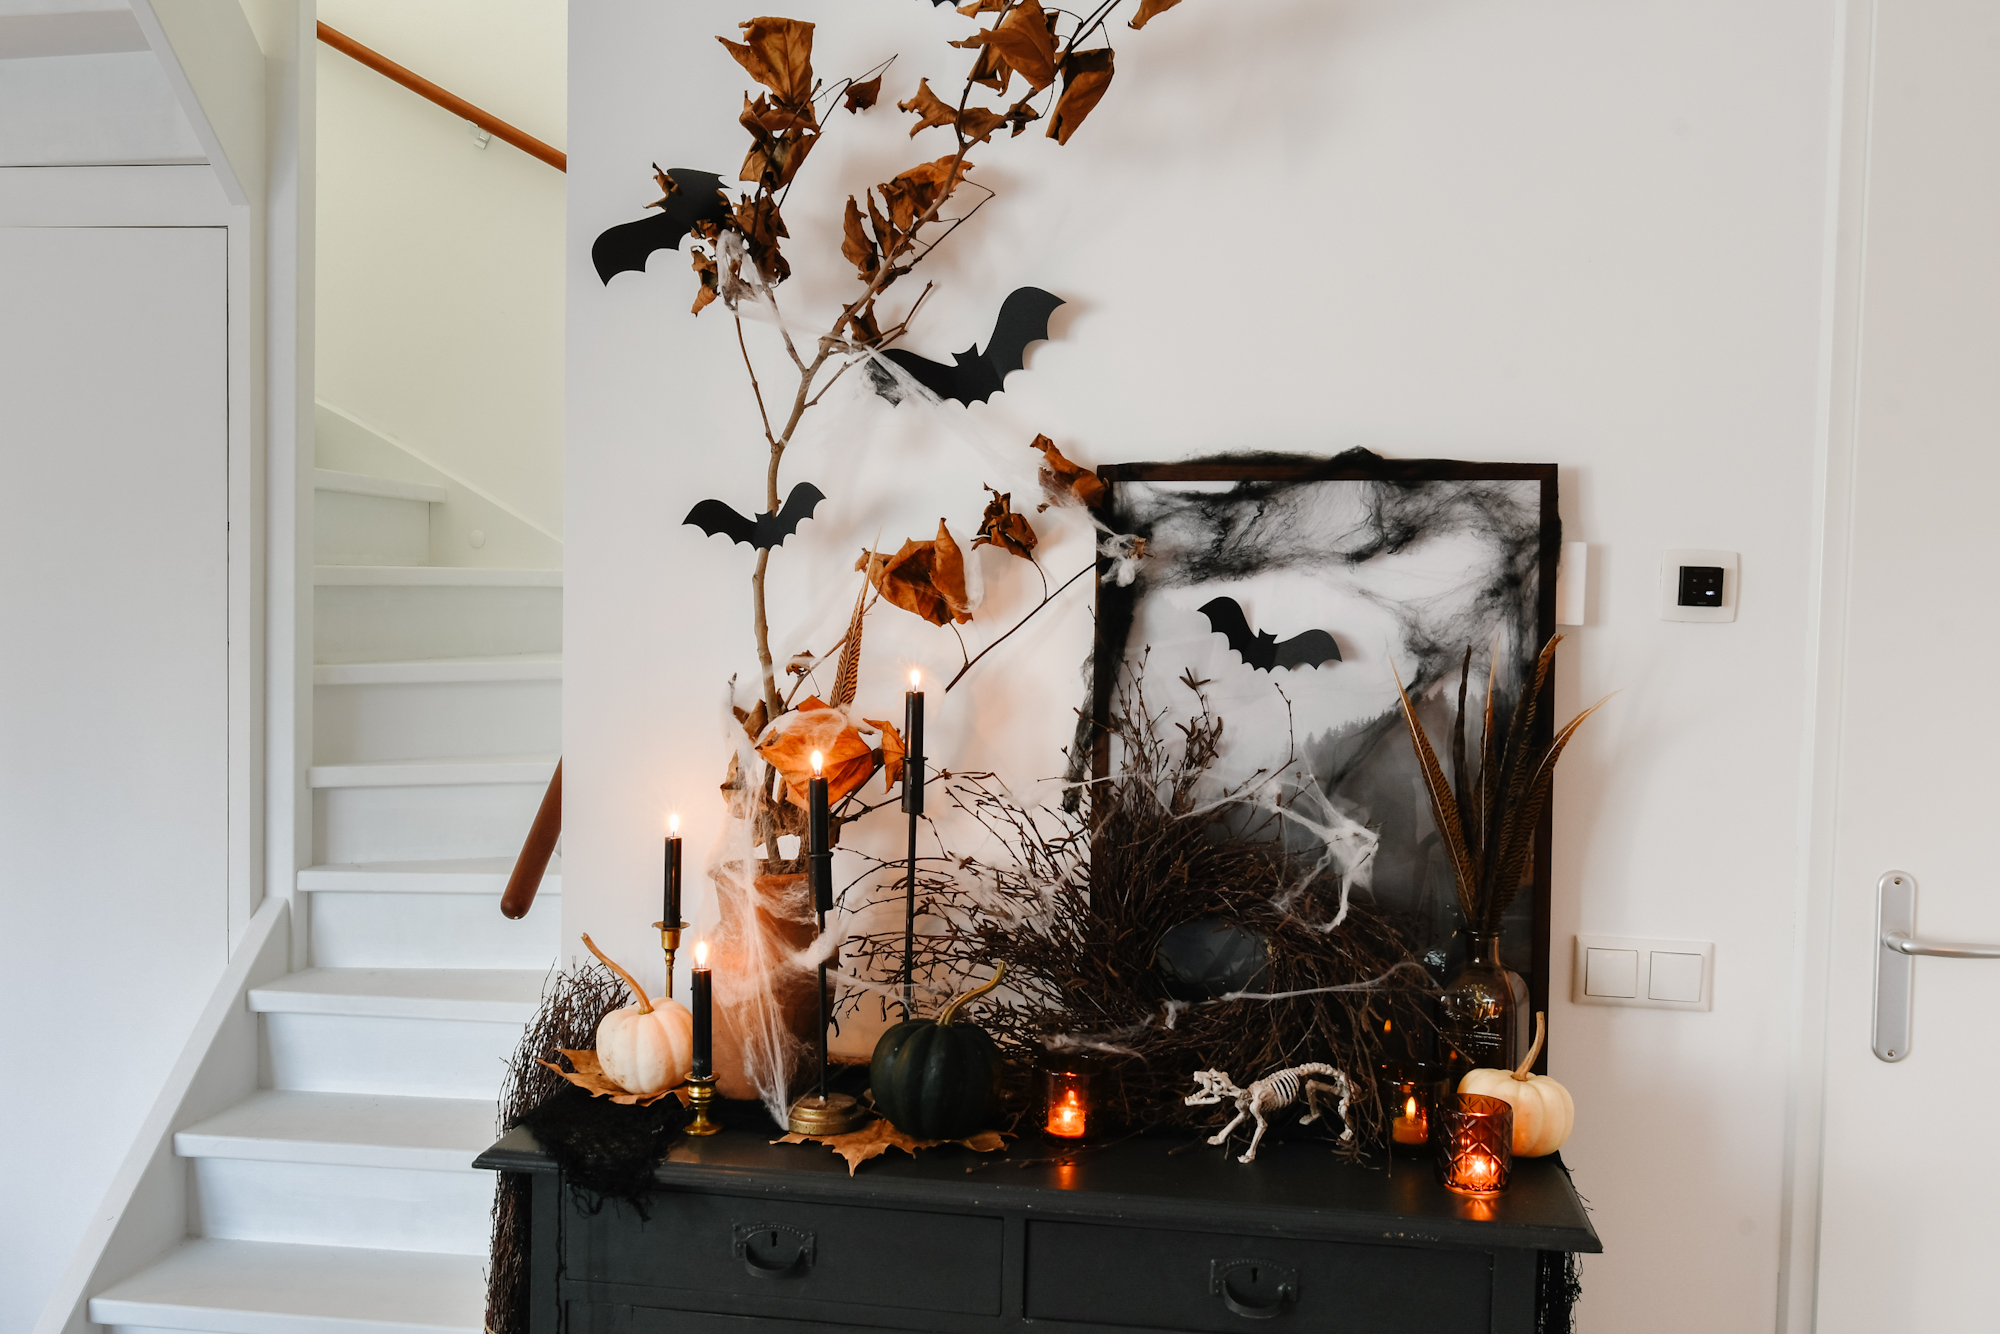 vocaal melk mixer Halloween versiering: spooky decoratie op mijn kastje - So Celebrate! -  vier de seizoenen